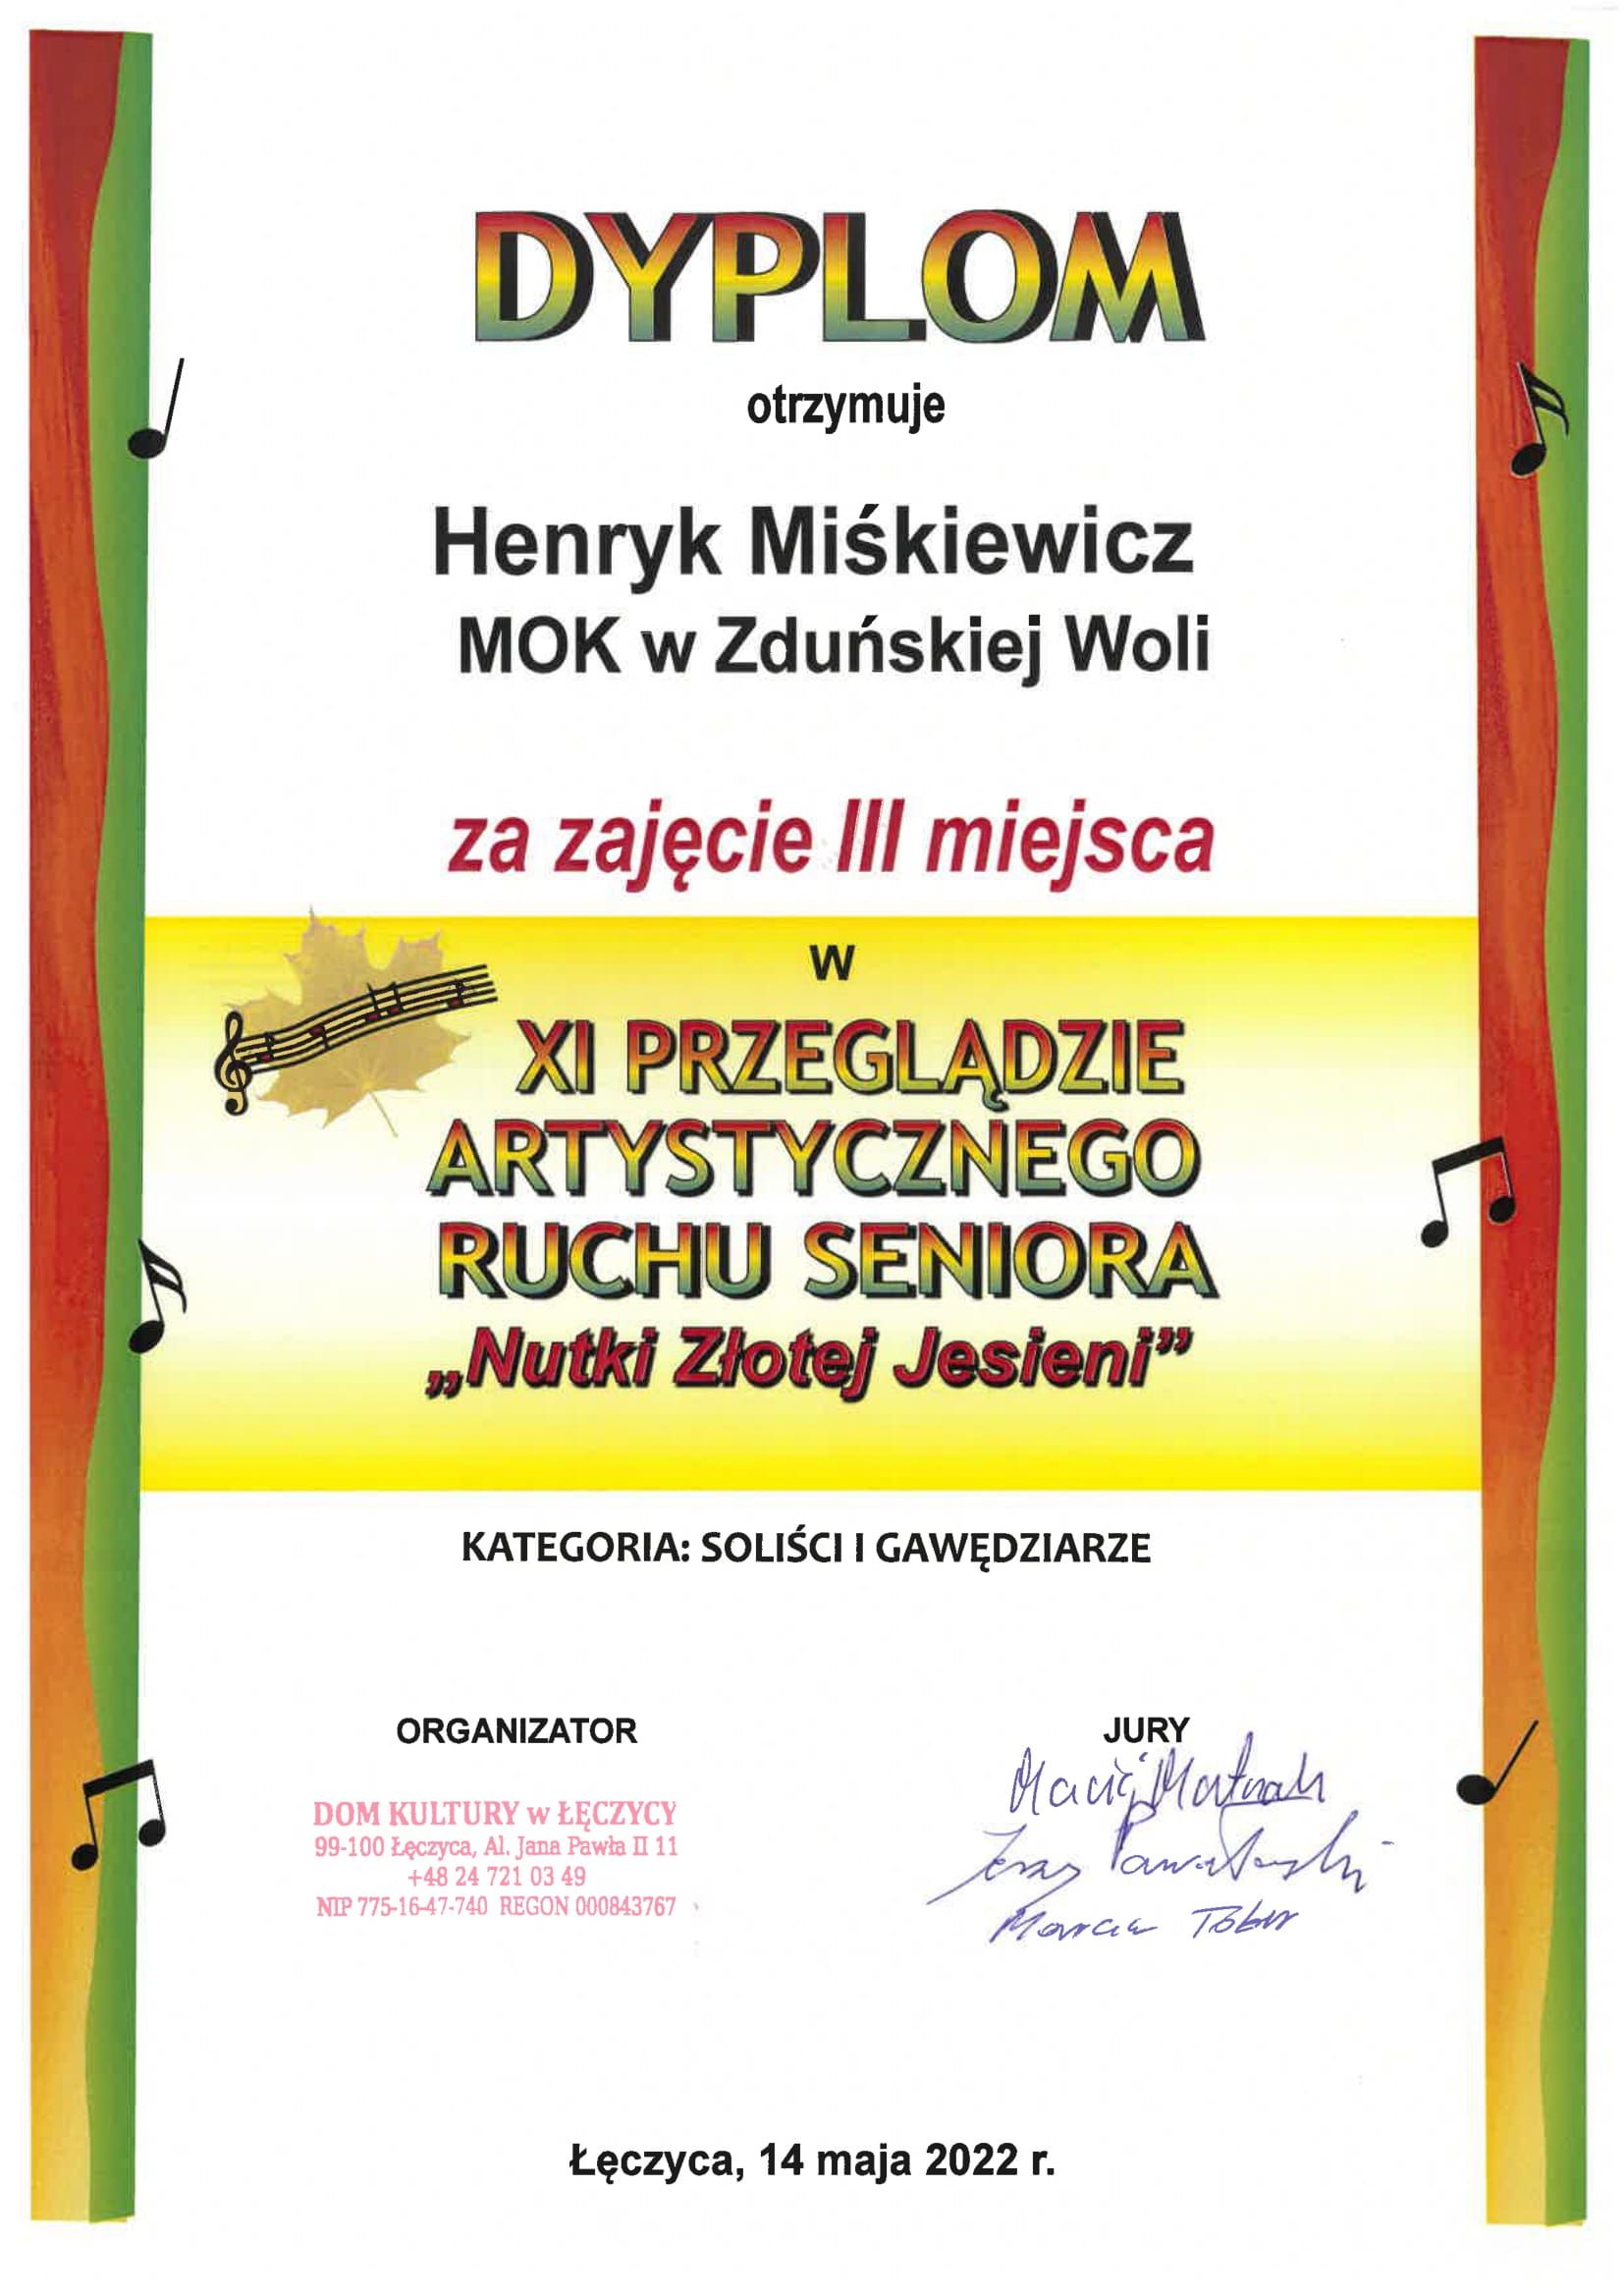 Solo III Miejsce Heryk Miskiewicz 1